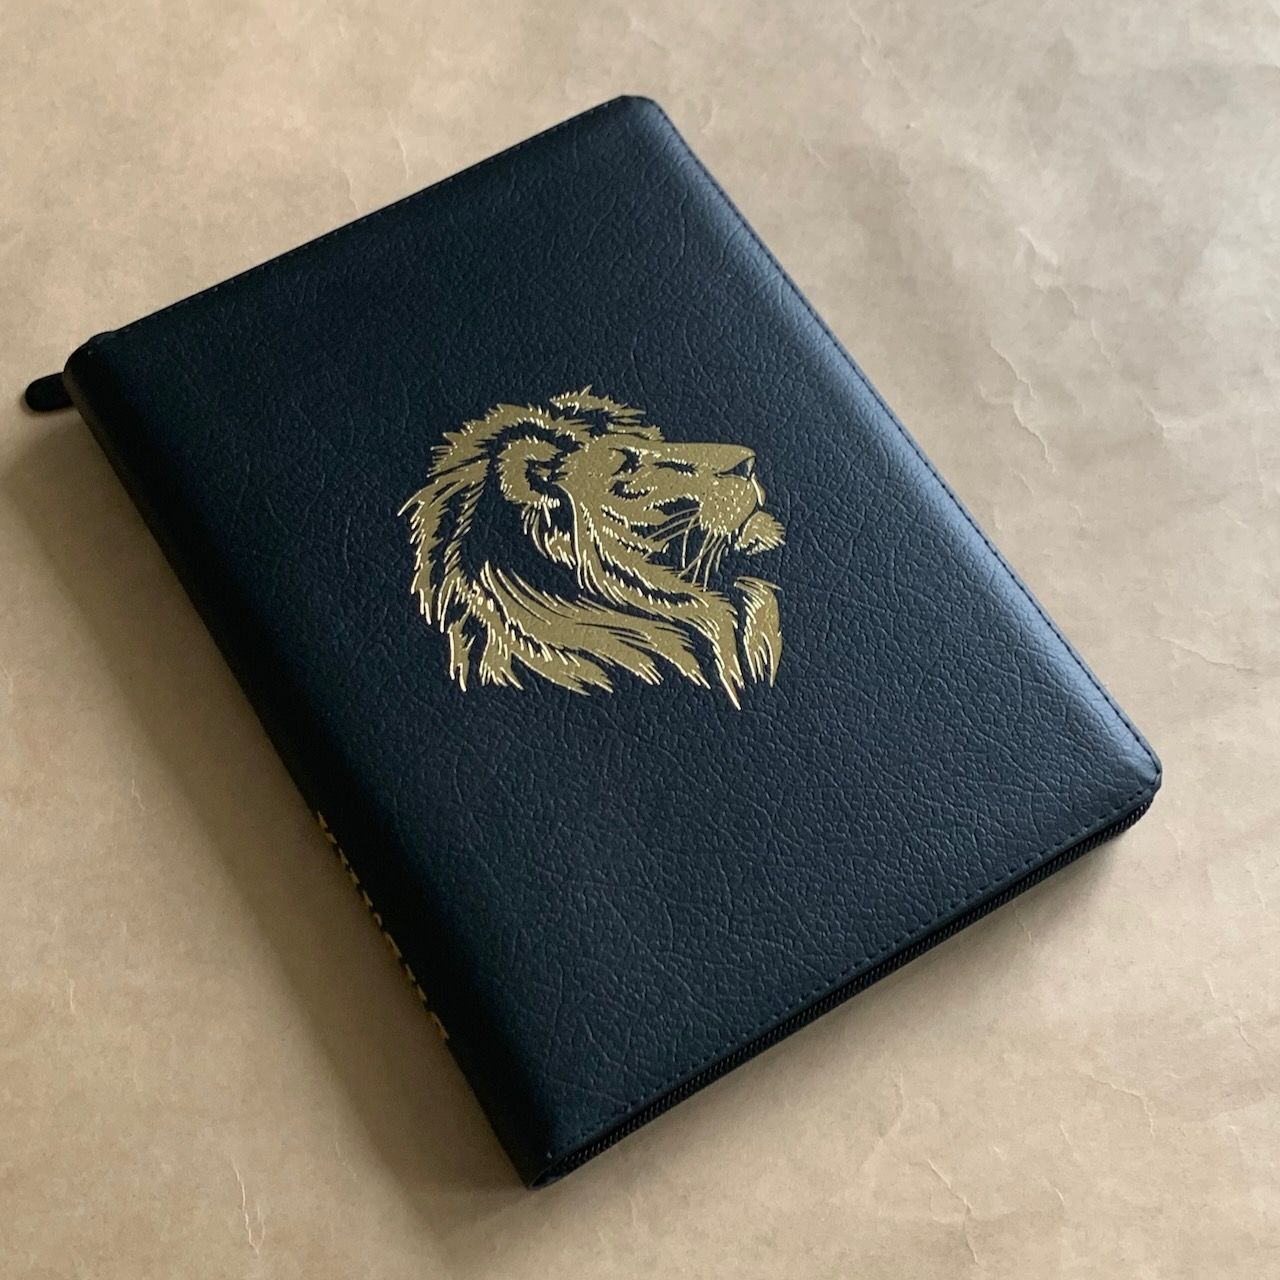 Библия 076z код B6, дизайн "золотой лев", кожаный переплет на молнии, цвет черный пятнистый, размер 180x243 мм